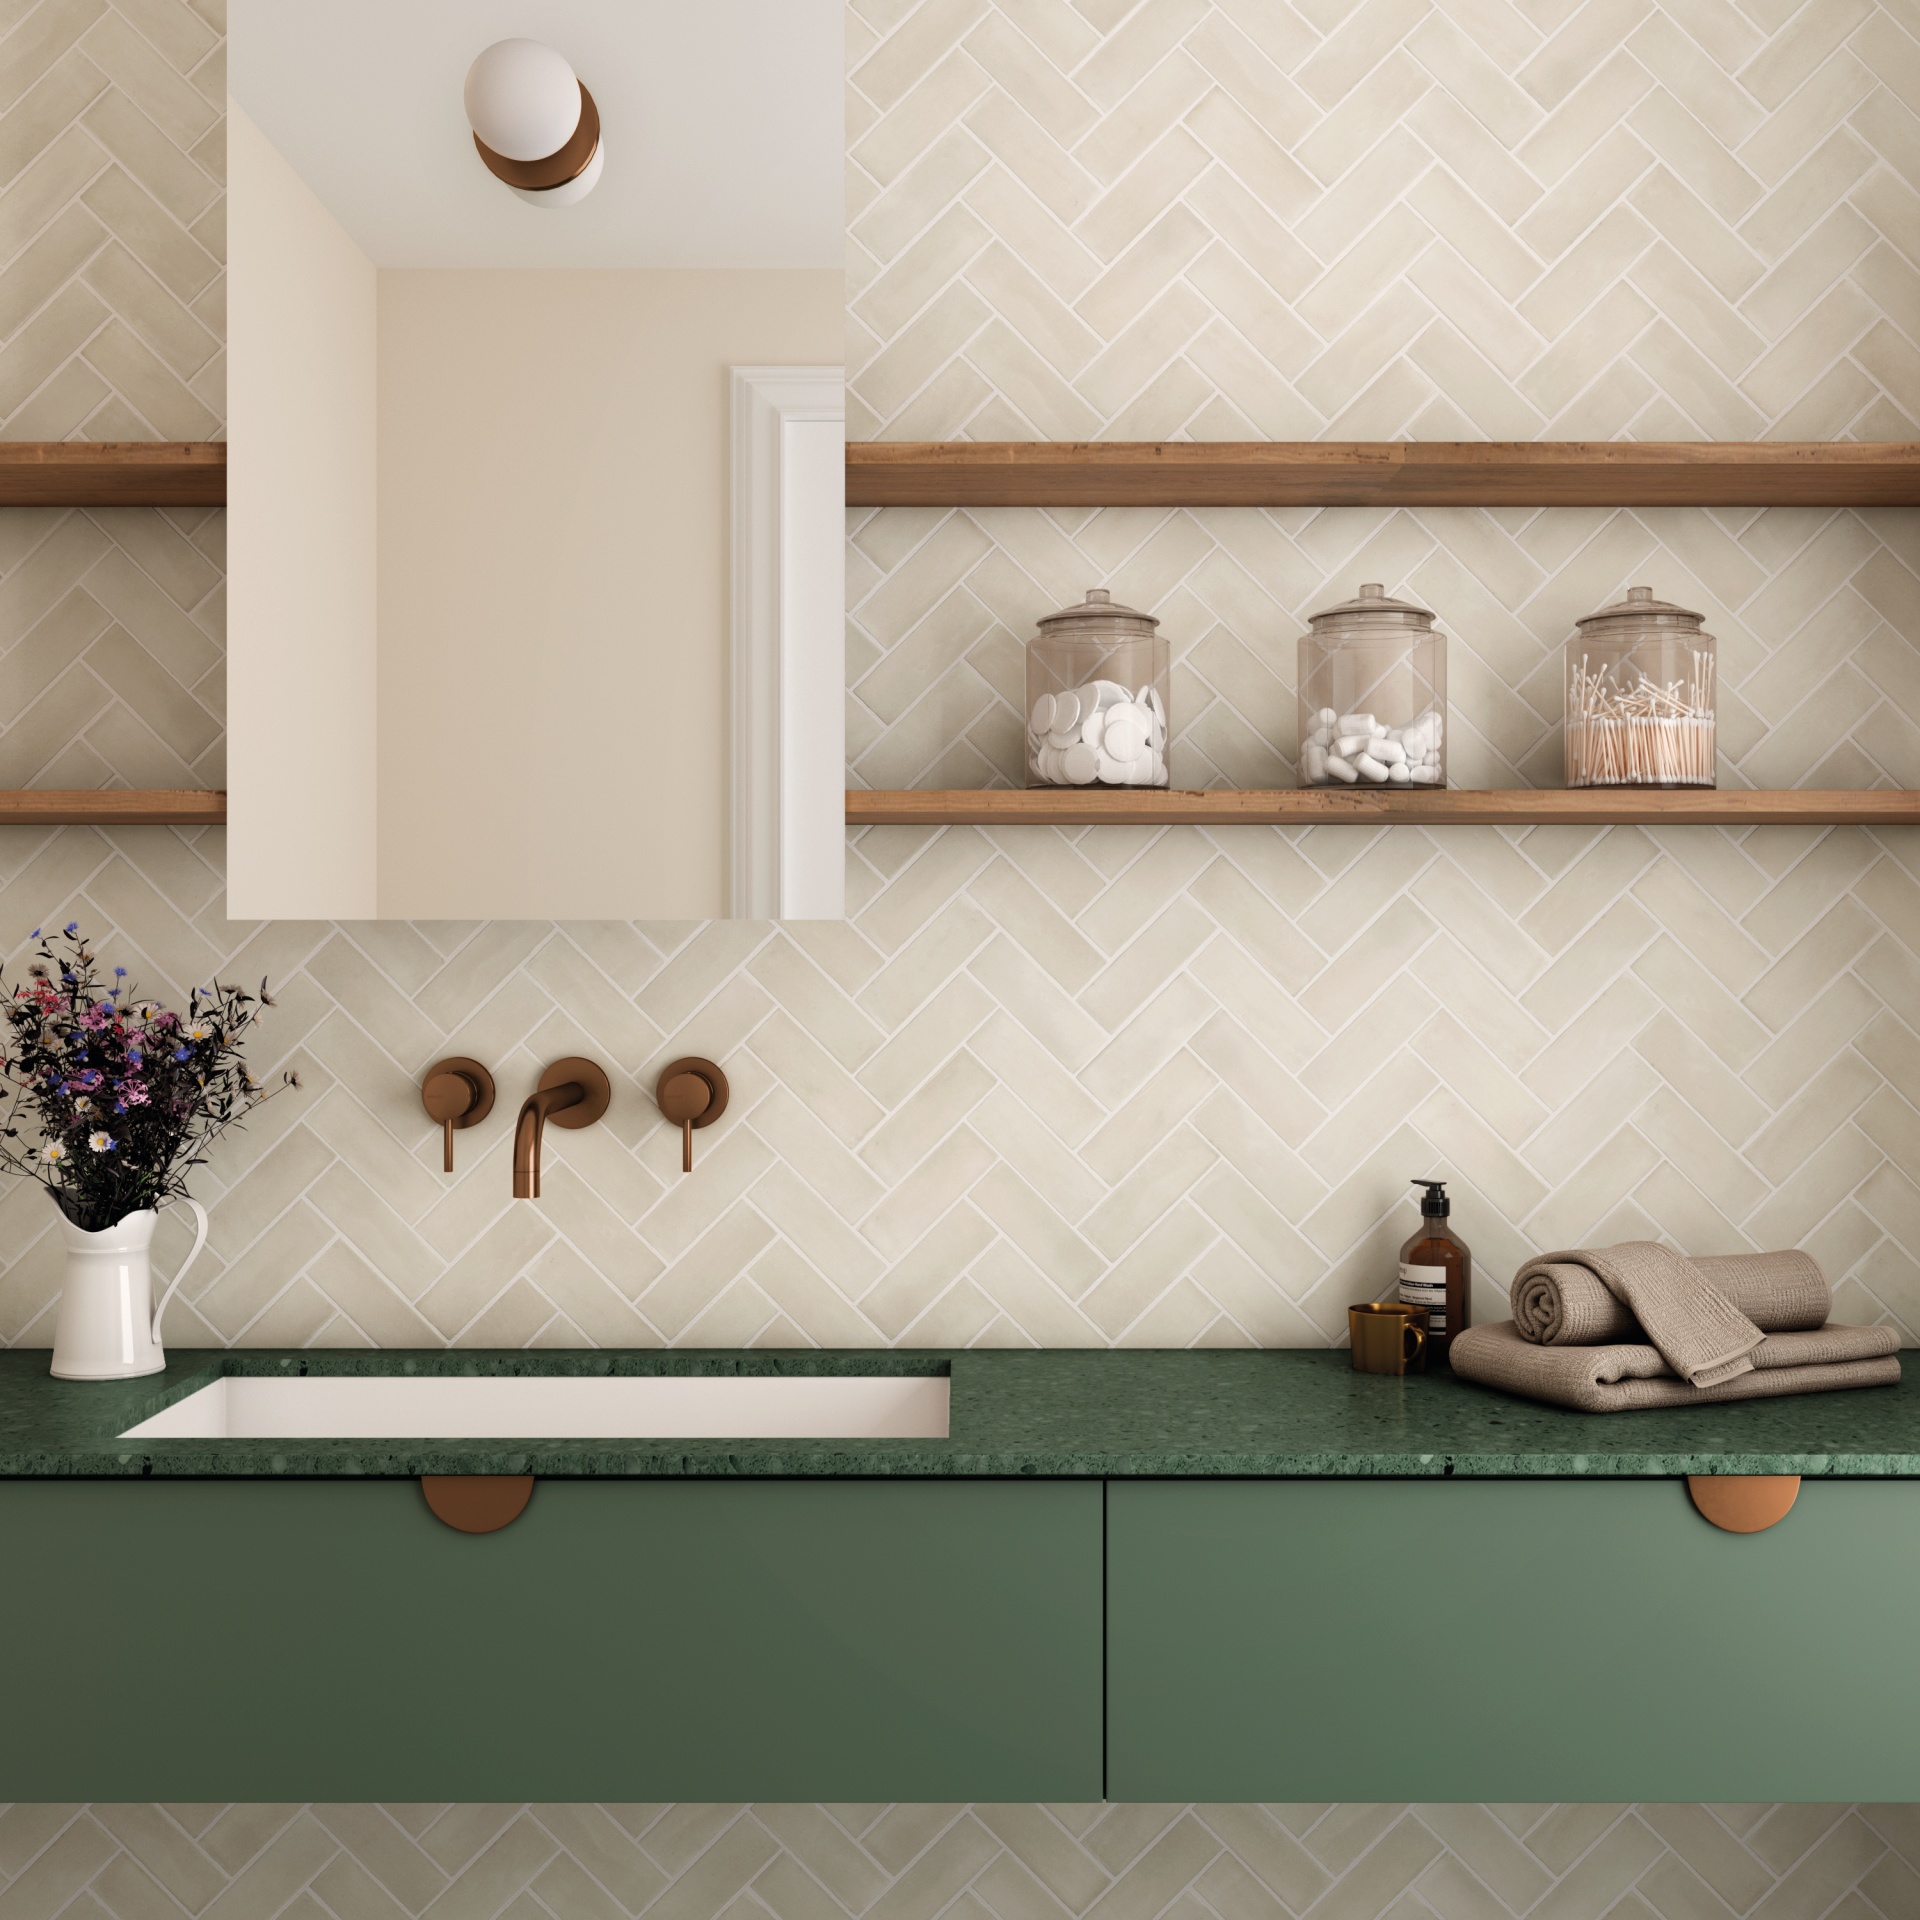 Zellige beige posé en chevron 5X15 dans une salle de bain tons crème et vert étagères en bois vasque moderne accessoires décoratifs